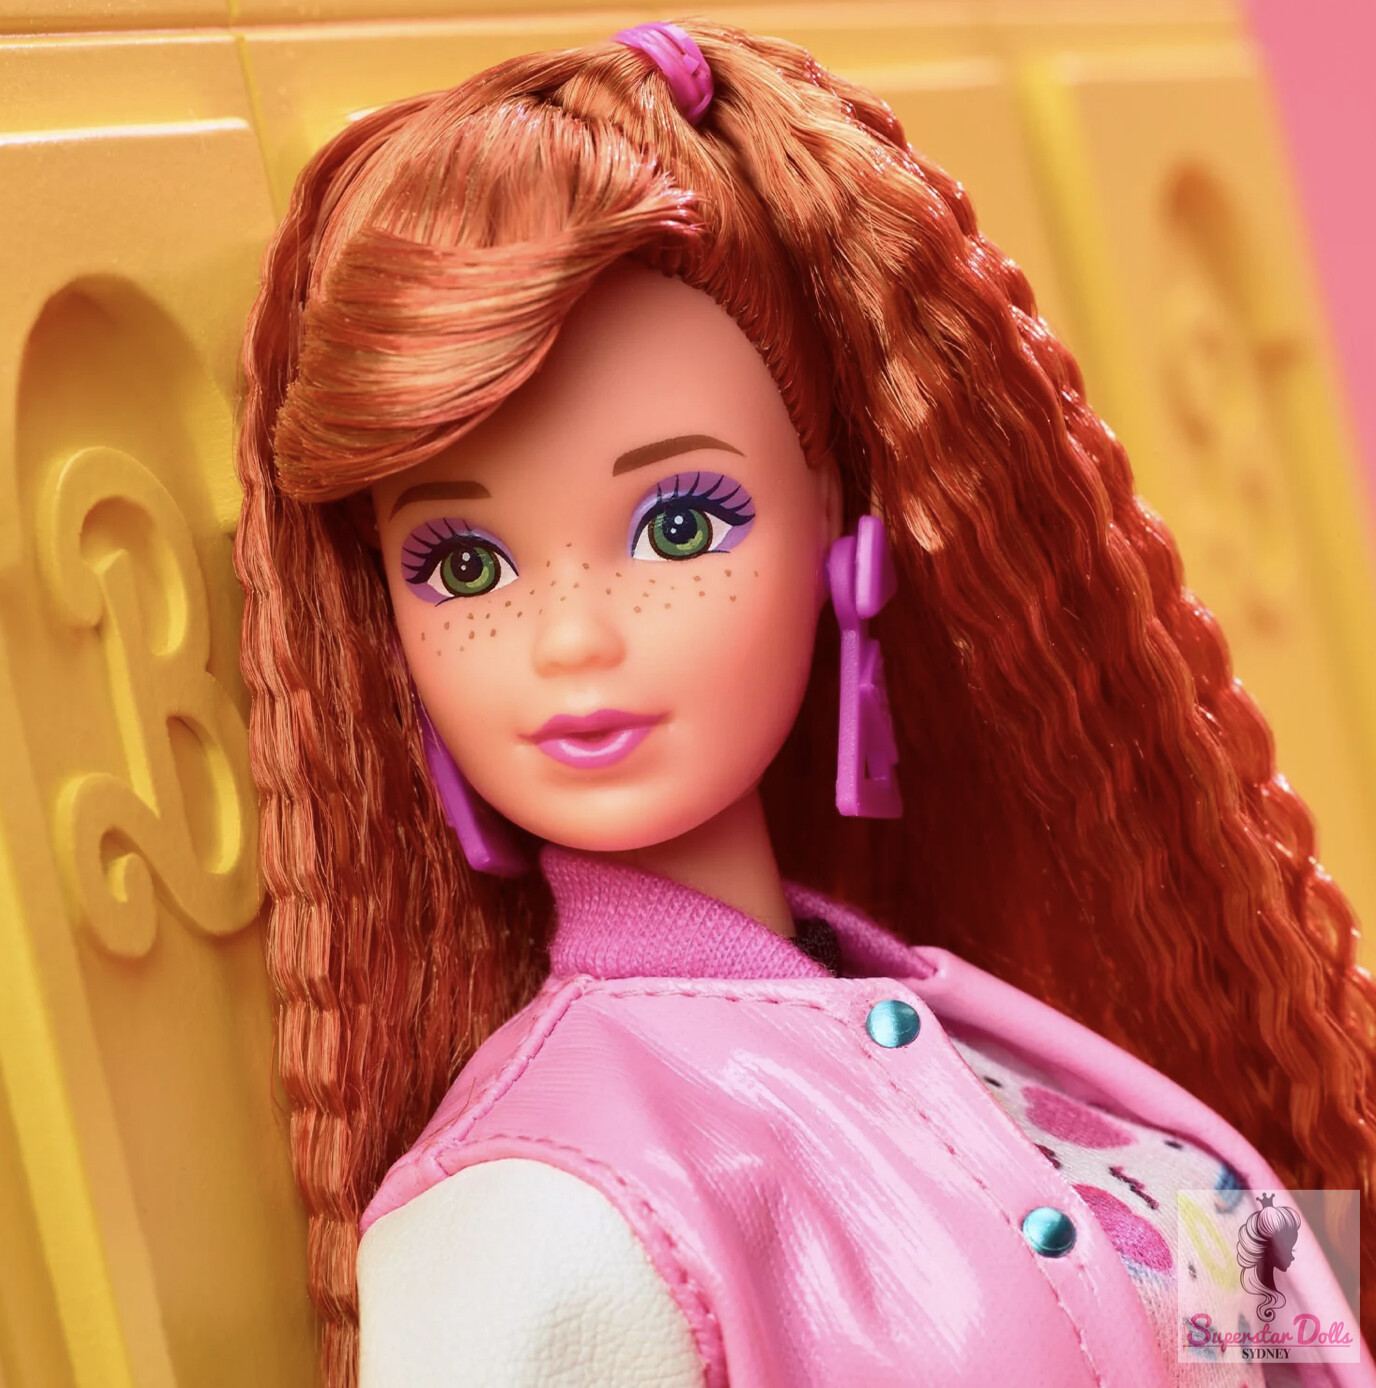 2022 Black Label: "Schoolin' Around" Barbie Rewind #5 Doll